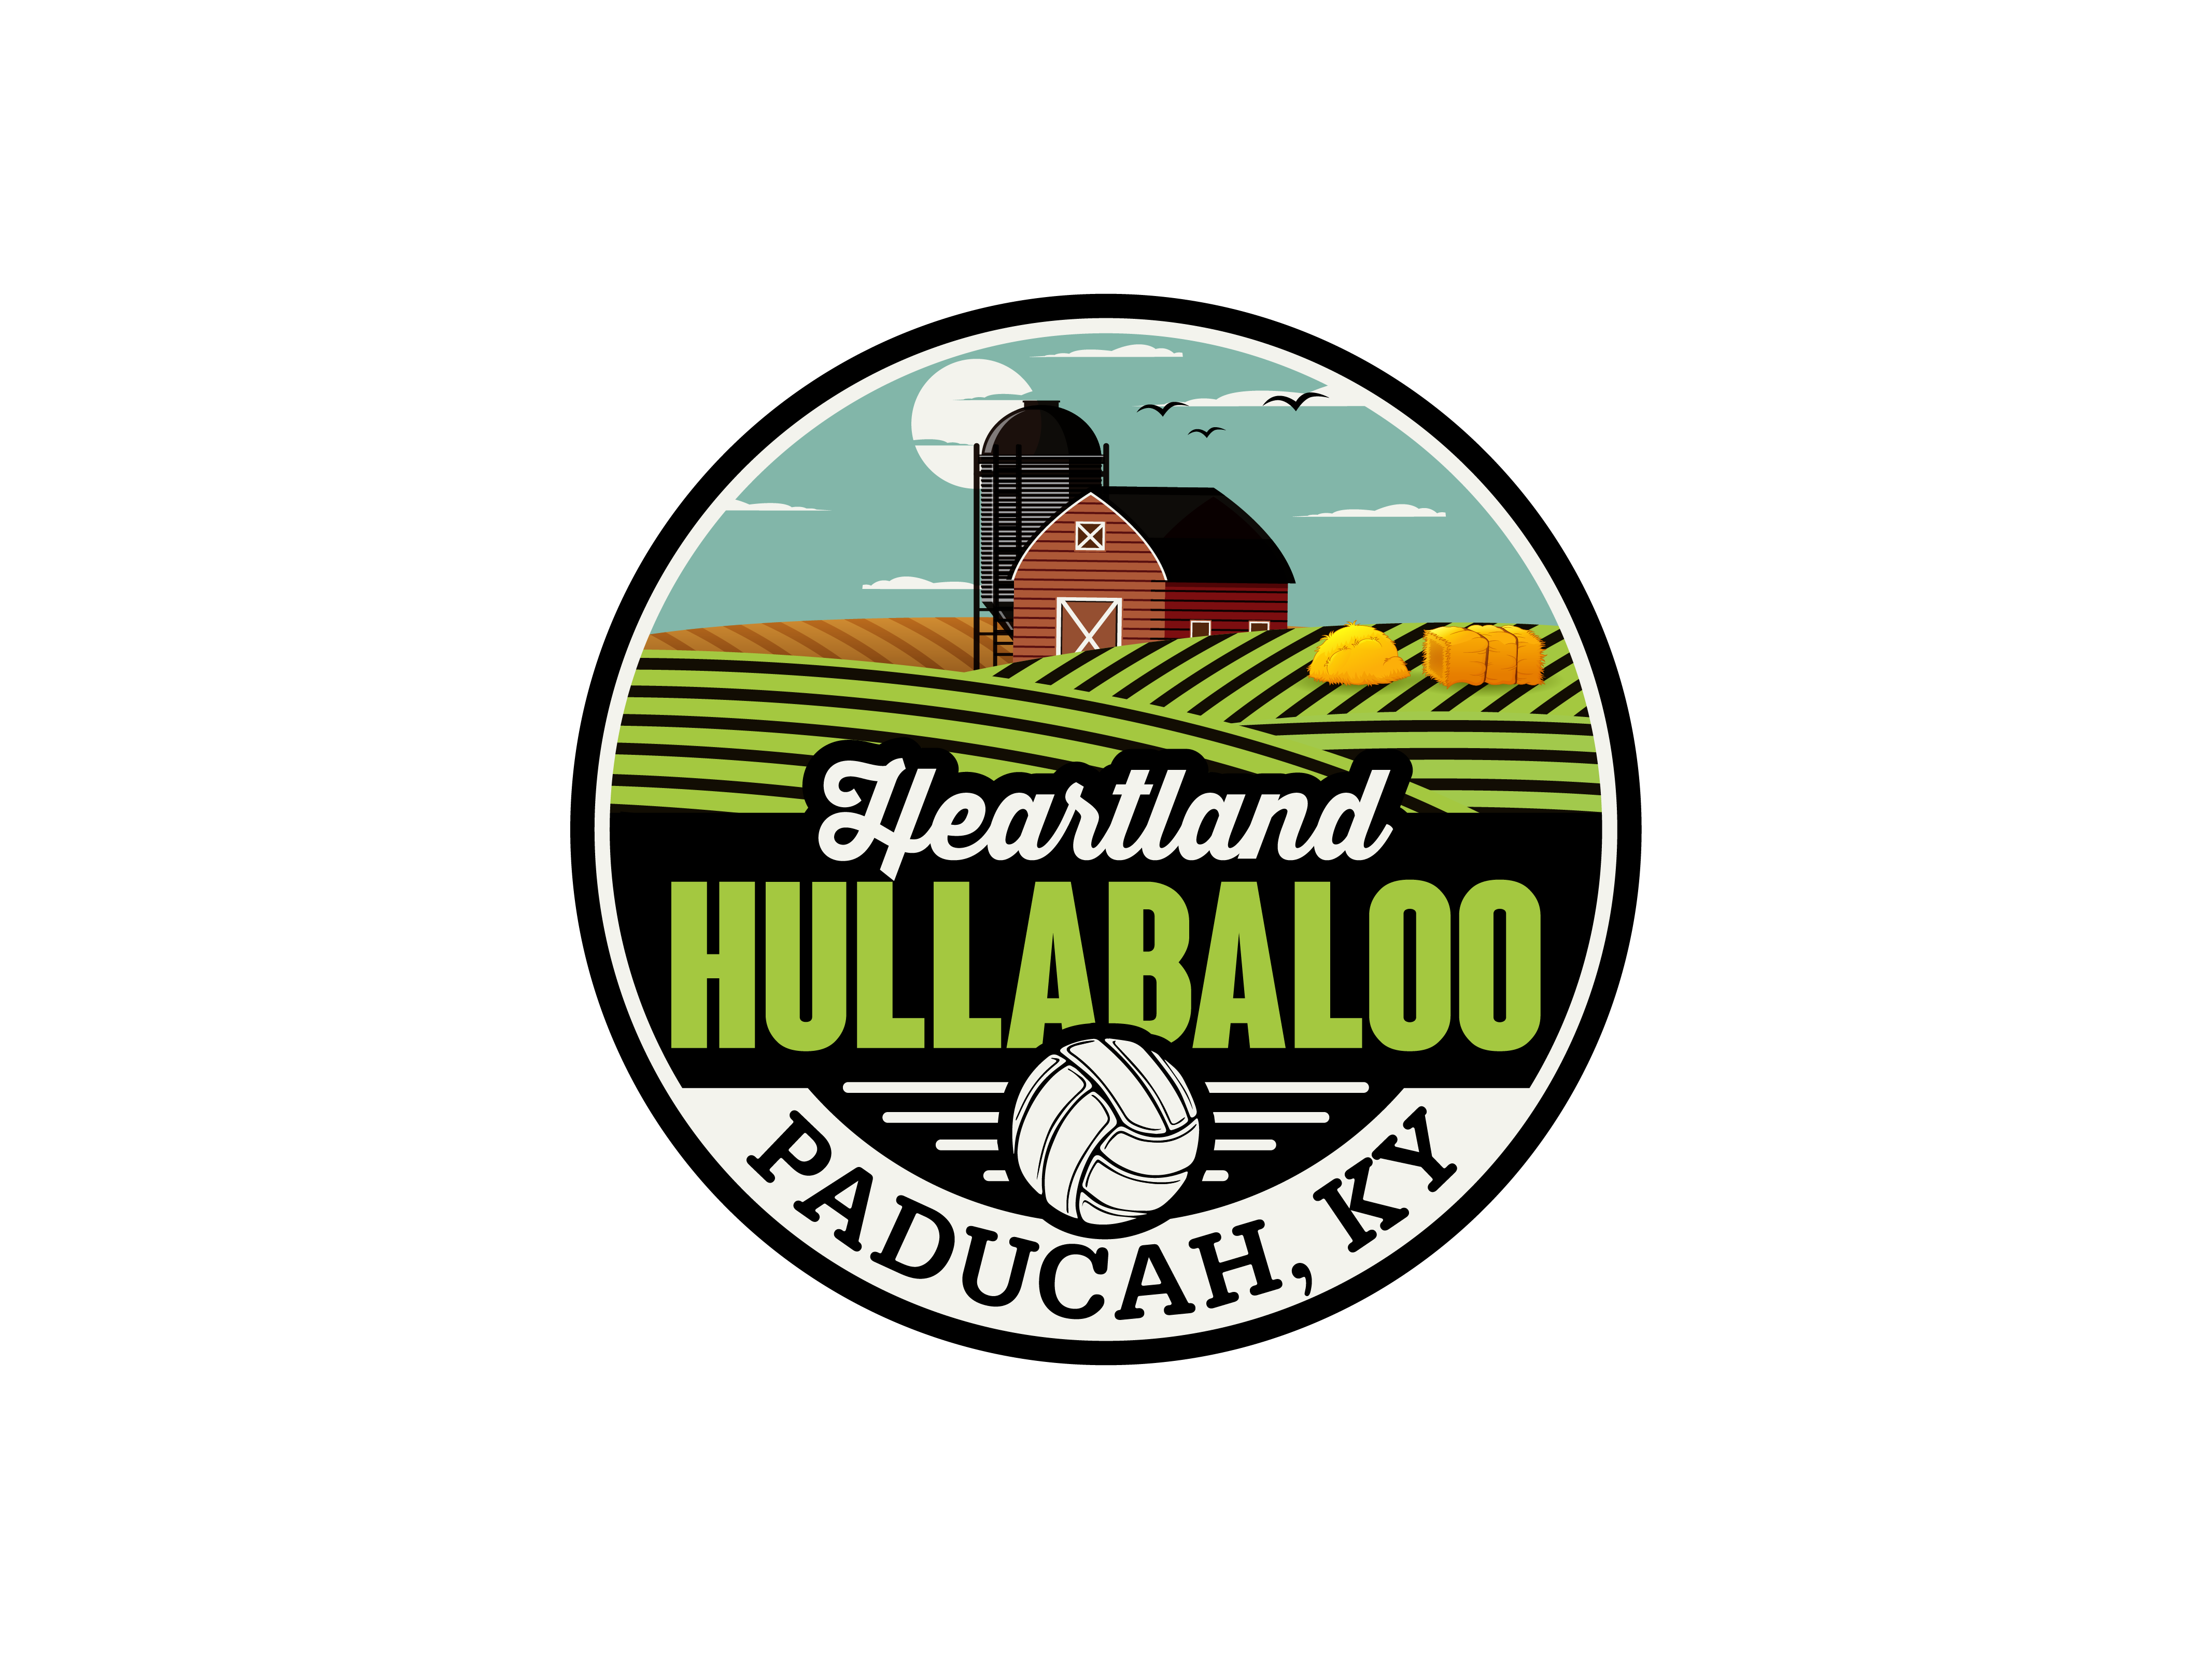 Heartland Hullabaloo